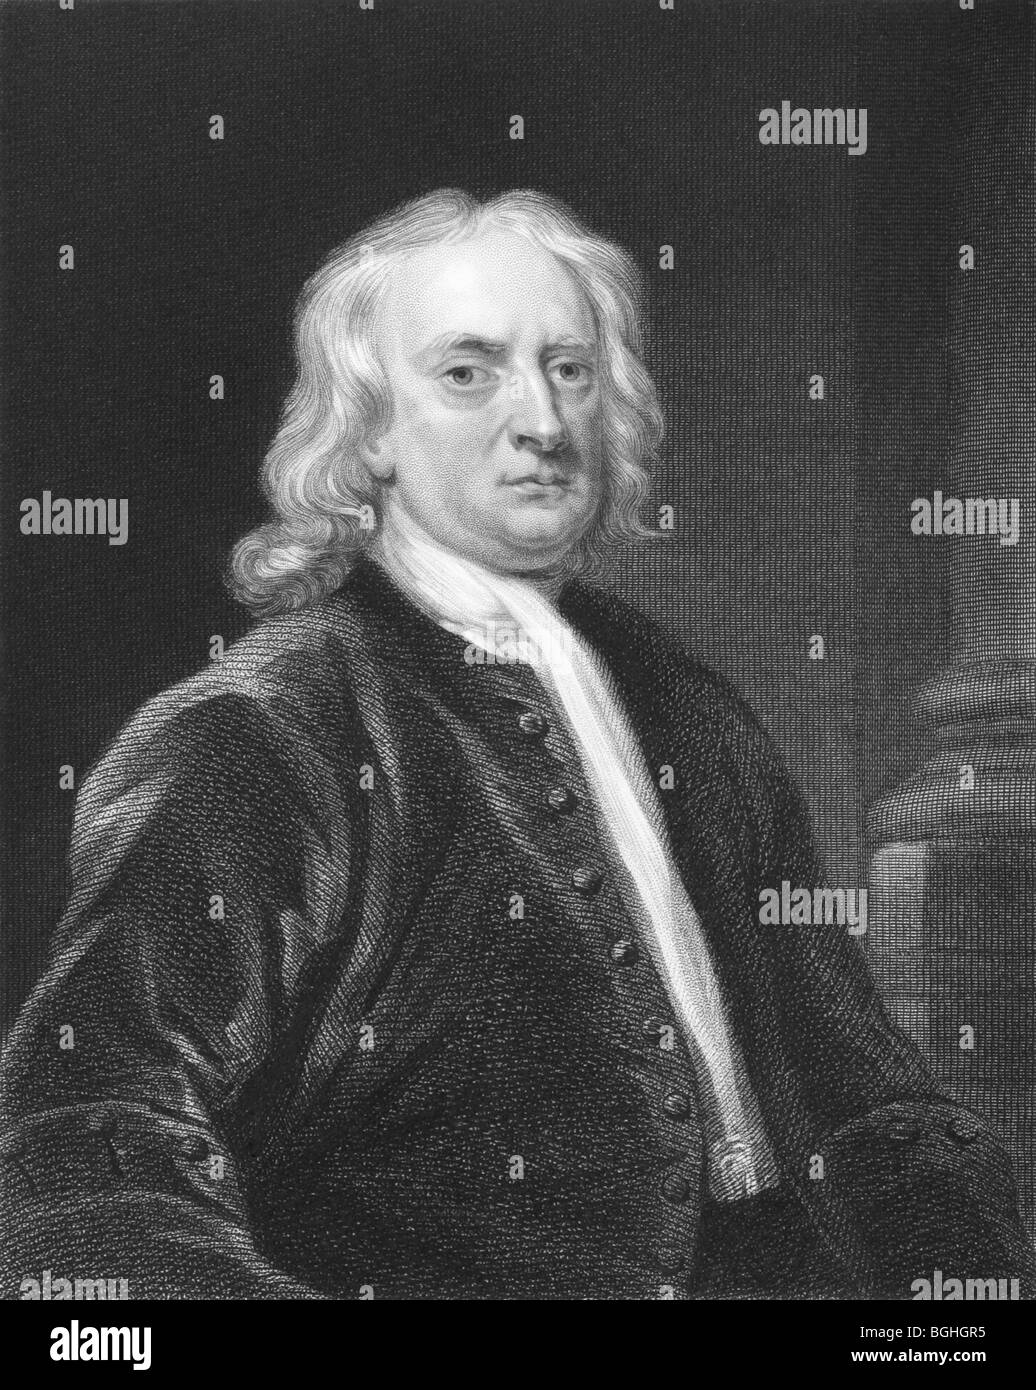 Gravure sur Isaac Newton à partir des années 1850. L'un des scientifiques les plus influents de l'histoire. Banque D'Images